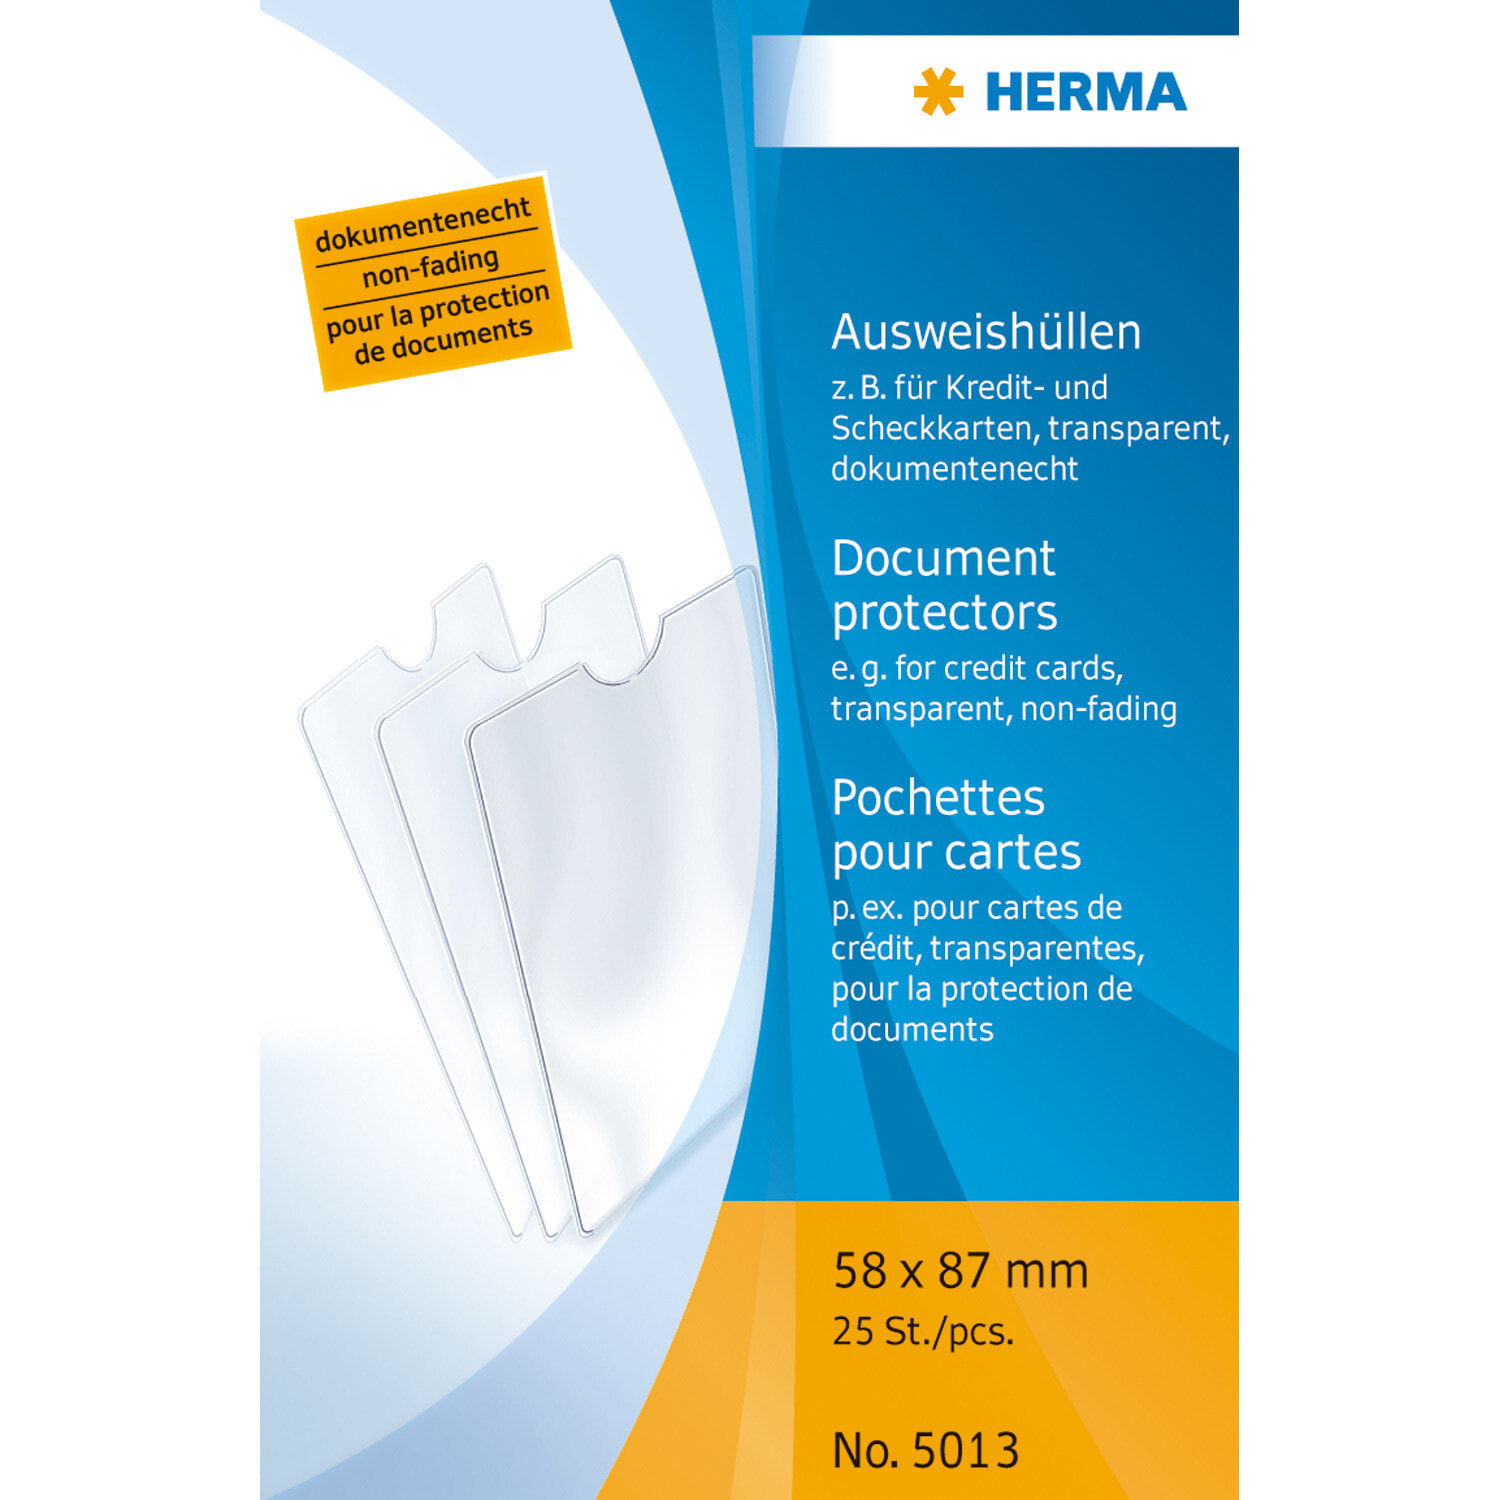 HERMA 5013 файл для документов 58 x 87 mm Полипропилен (ПП) 25 шт